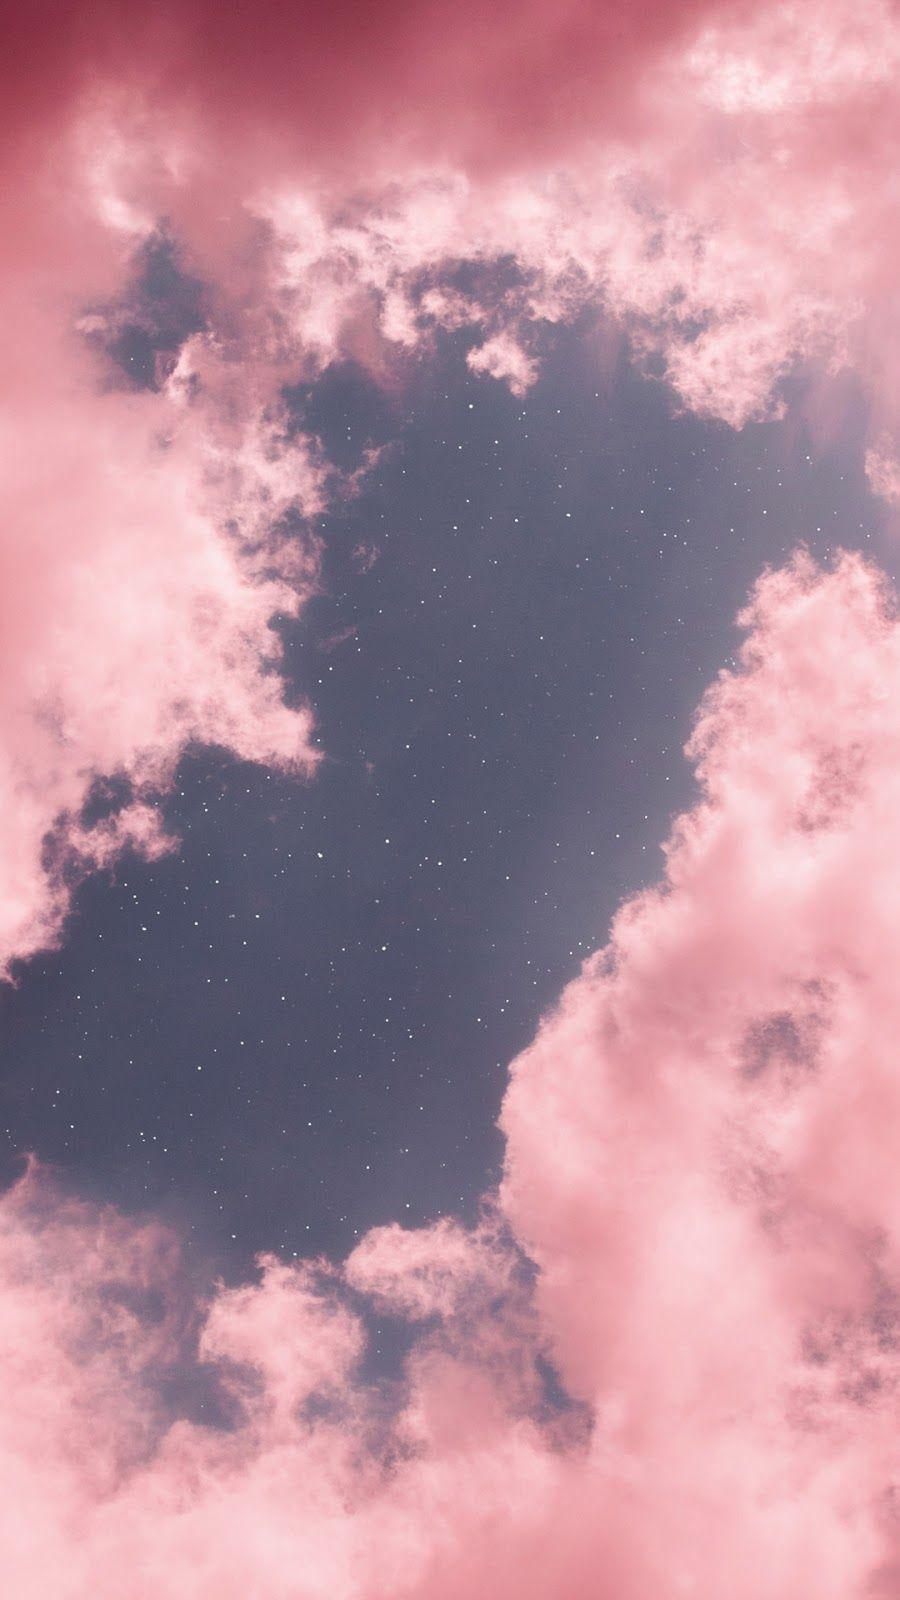 Hình nền đám mây hồng 900x1600 - Nền đám mây hồng thẩm mỹ - 900x1600